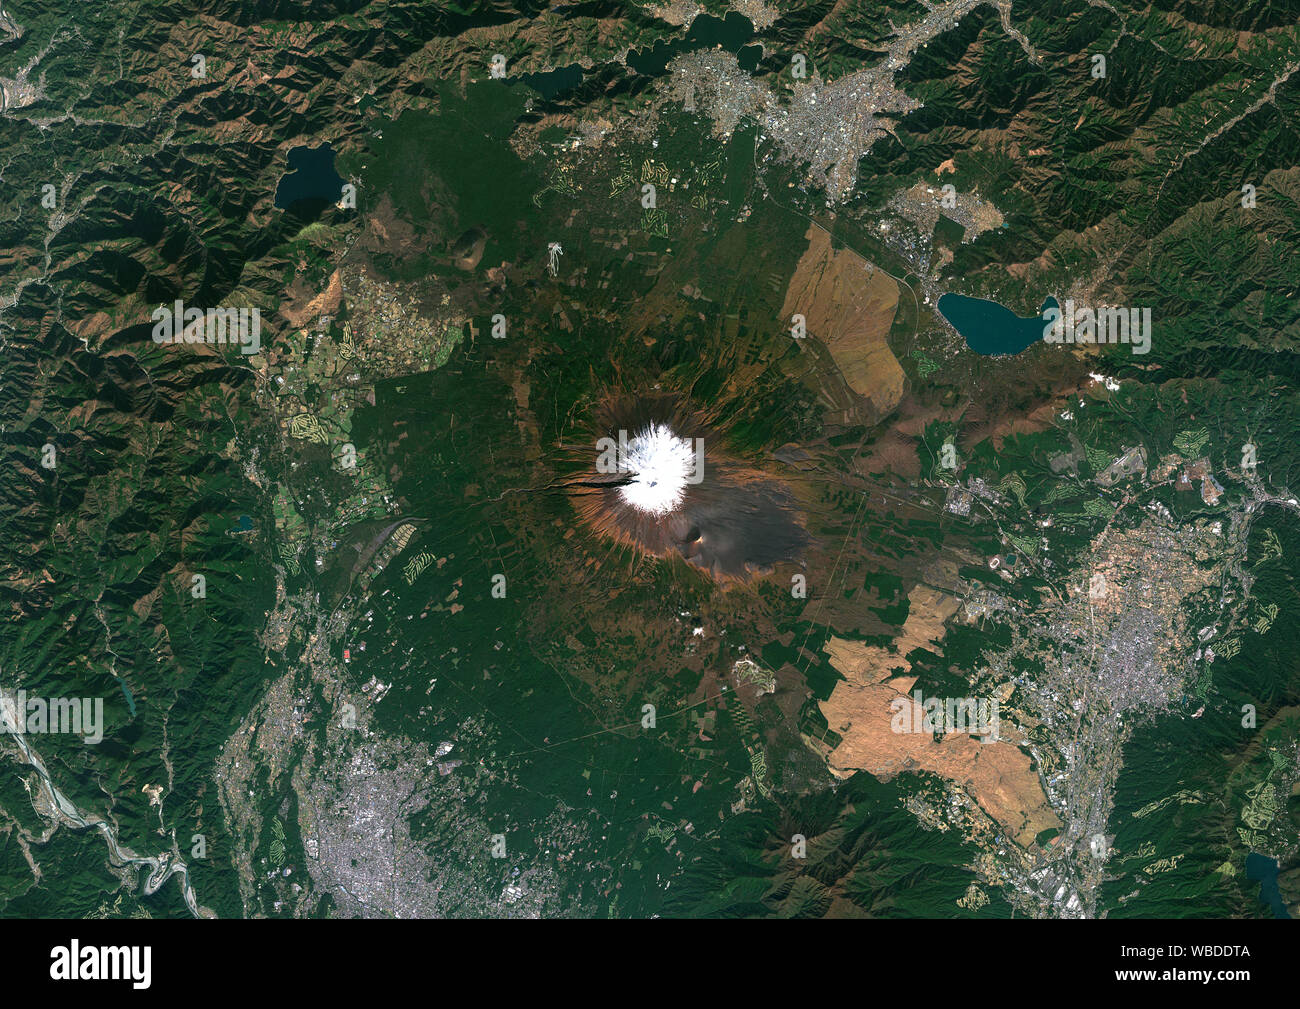 Colore immagine satellitare del Monte Fuji, Giappone. Il punto più alto del Giappone a 3776 m, il Monte Fuji o Fuji Yama si trova a sud-ovest di Tokyo, sull isola di Honshu. È stato aggiunto alla lista del Patrimonio Mondiale dell'UNESCO come sito culturale nel 2013. Immagine raccolta su 30 Ottobre 2018 da Sentinel-2 satelliti. Foto Stock